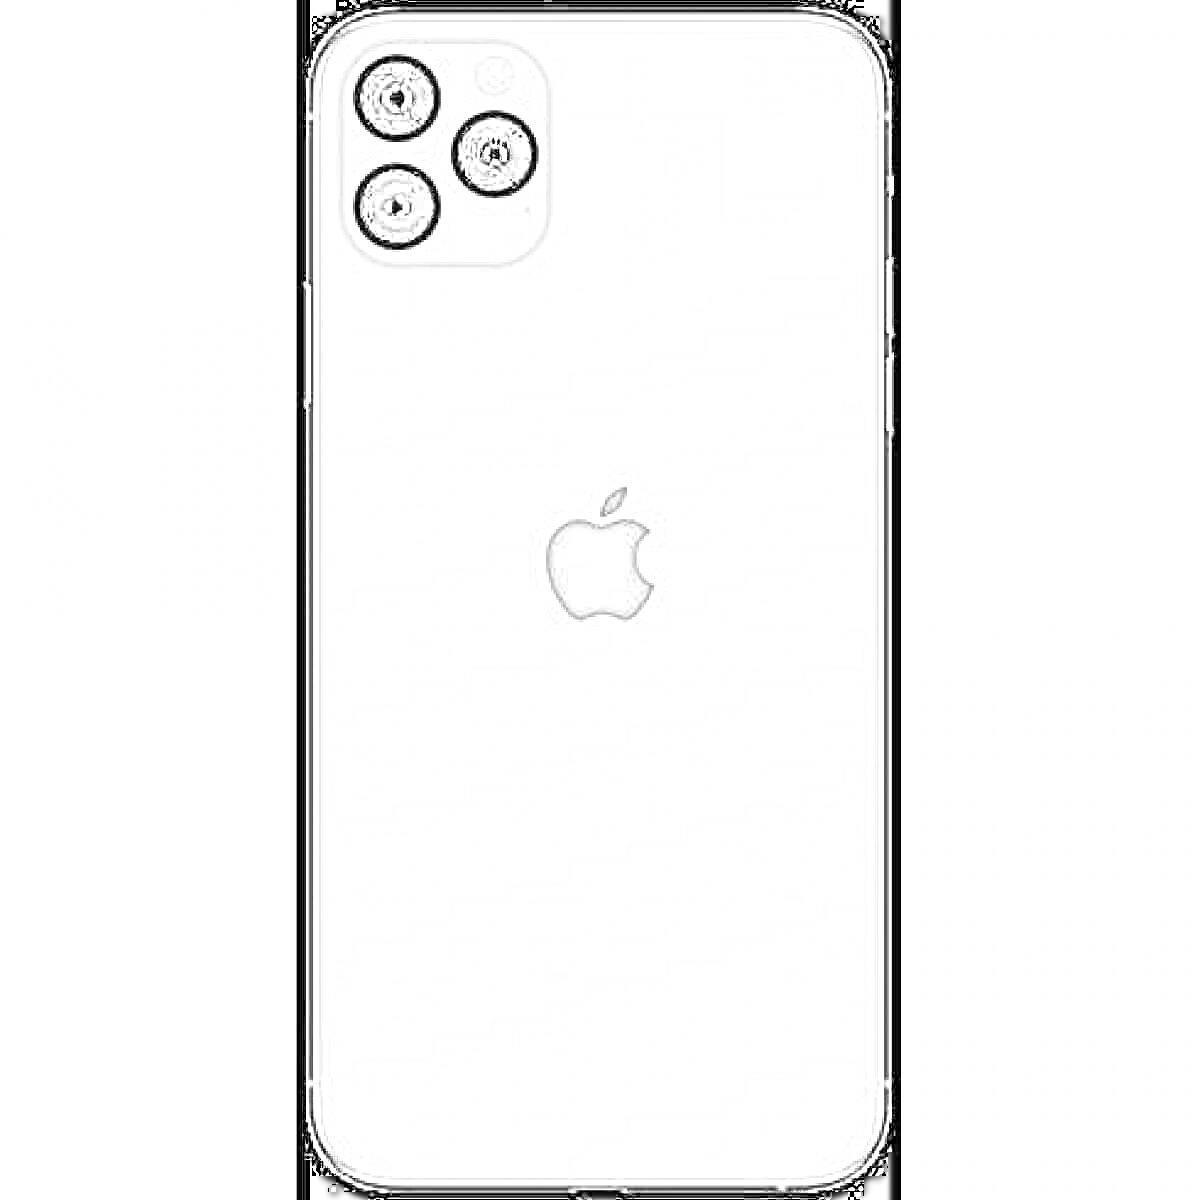 Задняя панель 13-й модели айфона, логотип в центре, три камеры и вспышка в левом верхнем углу